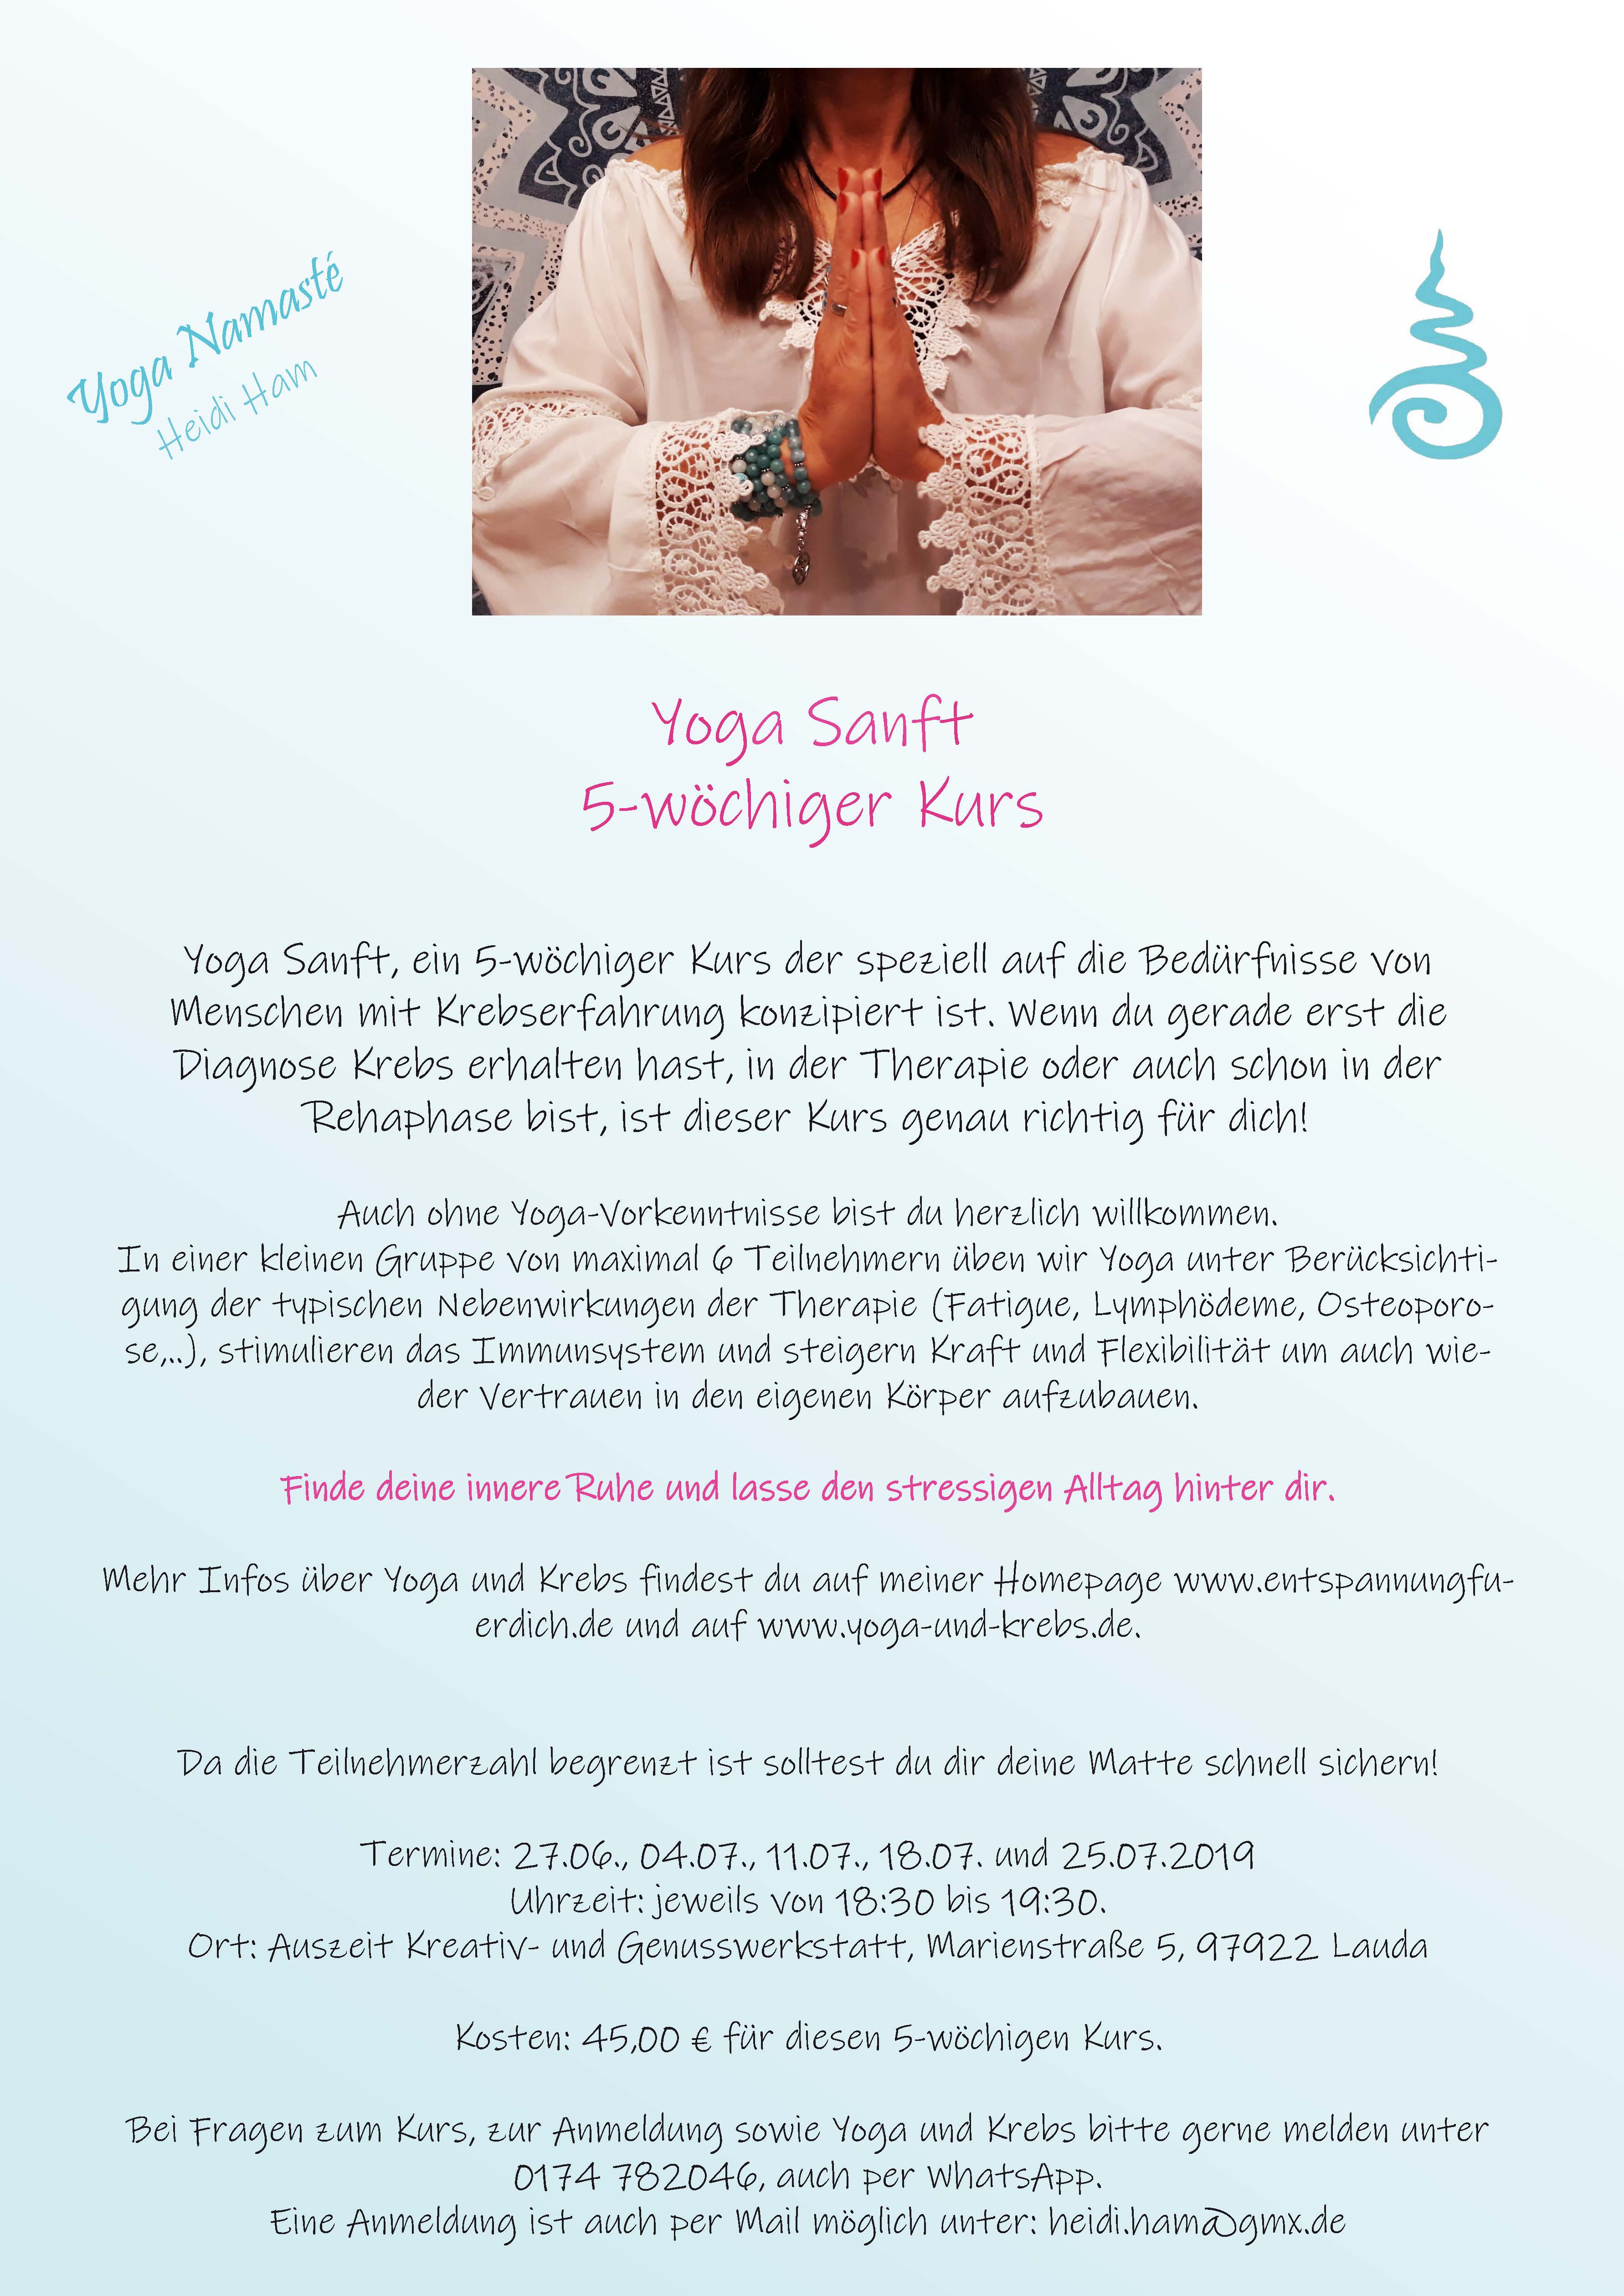 Yoga Sanft - 5-wöchiger Kurs